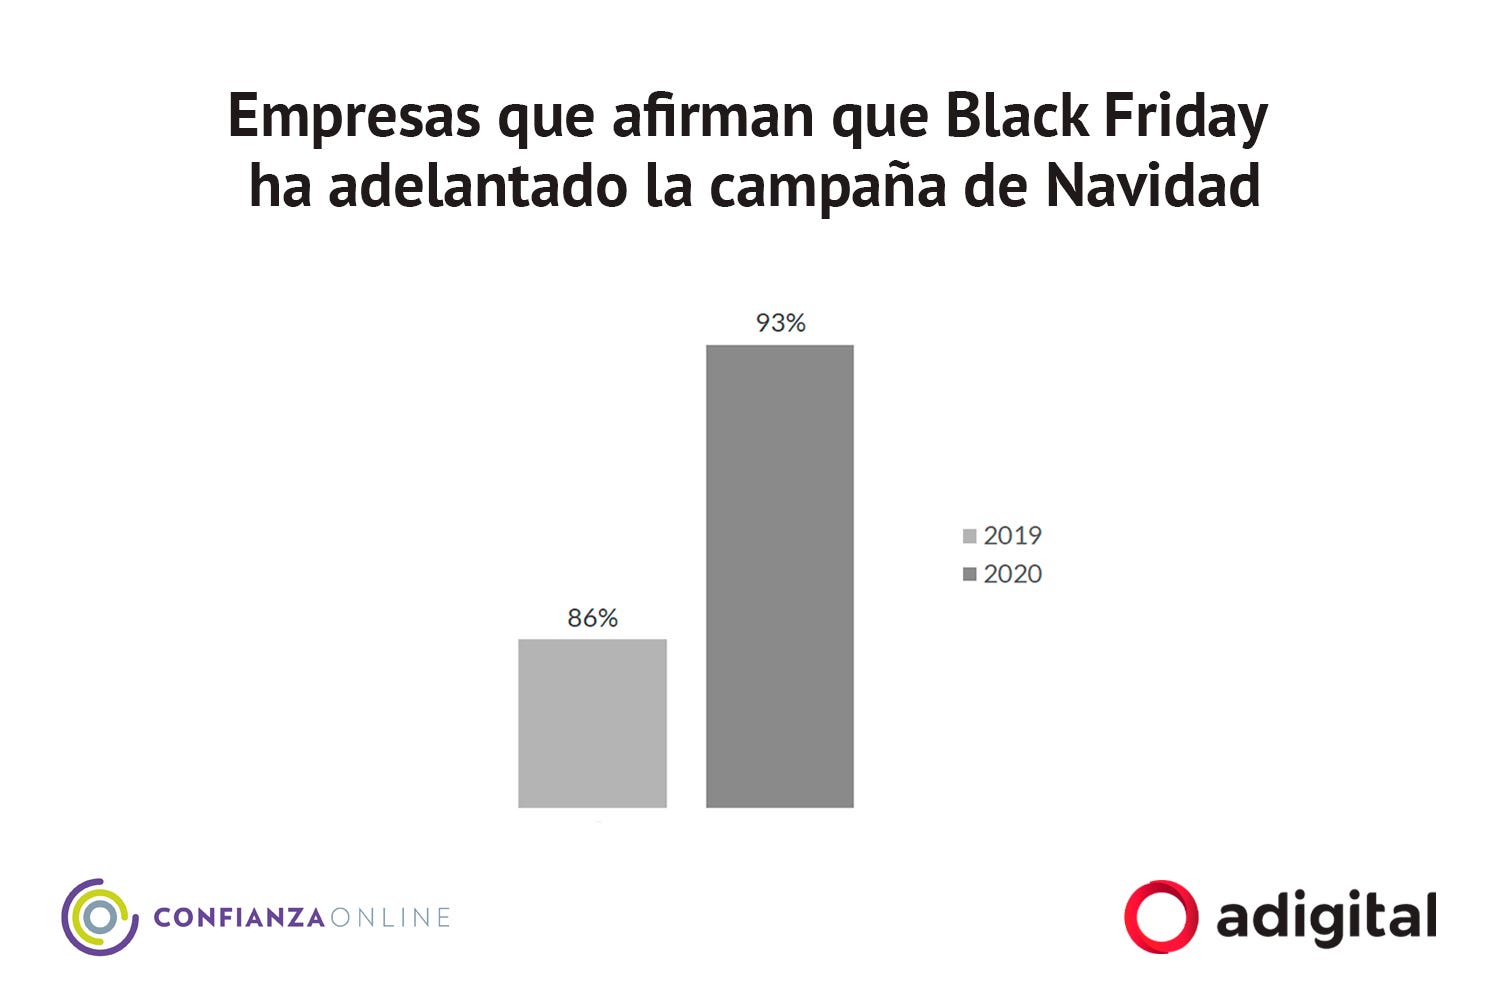 Pisamonas Black Friday 2019, Buy Now, Flash Sales, 54% OFF,  www.busformentera.com